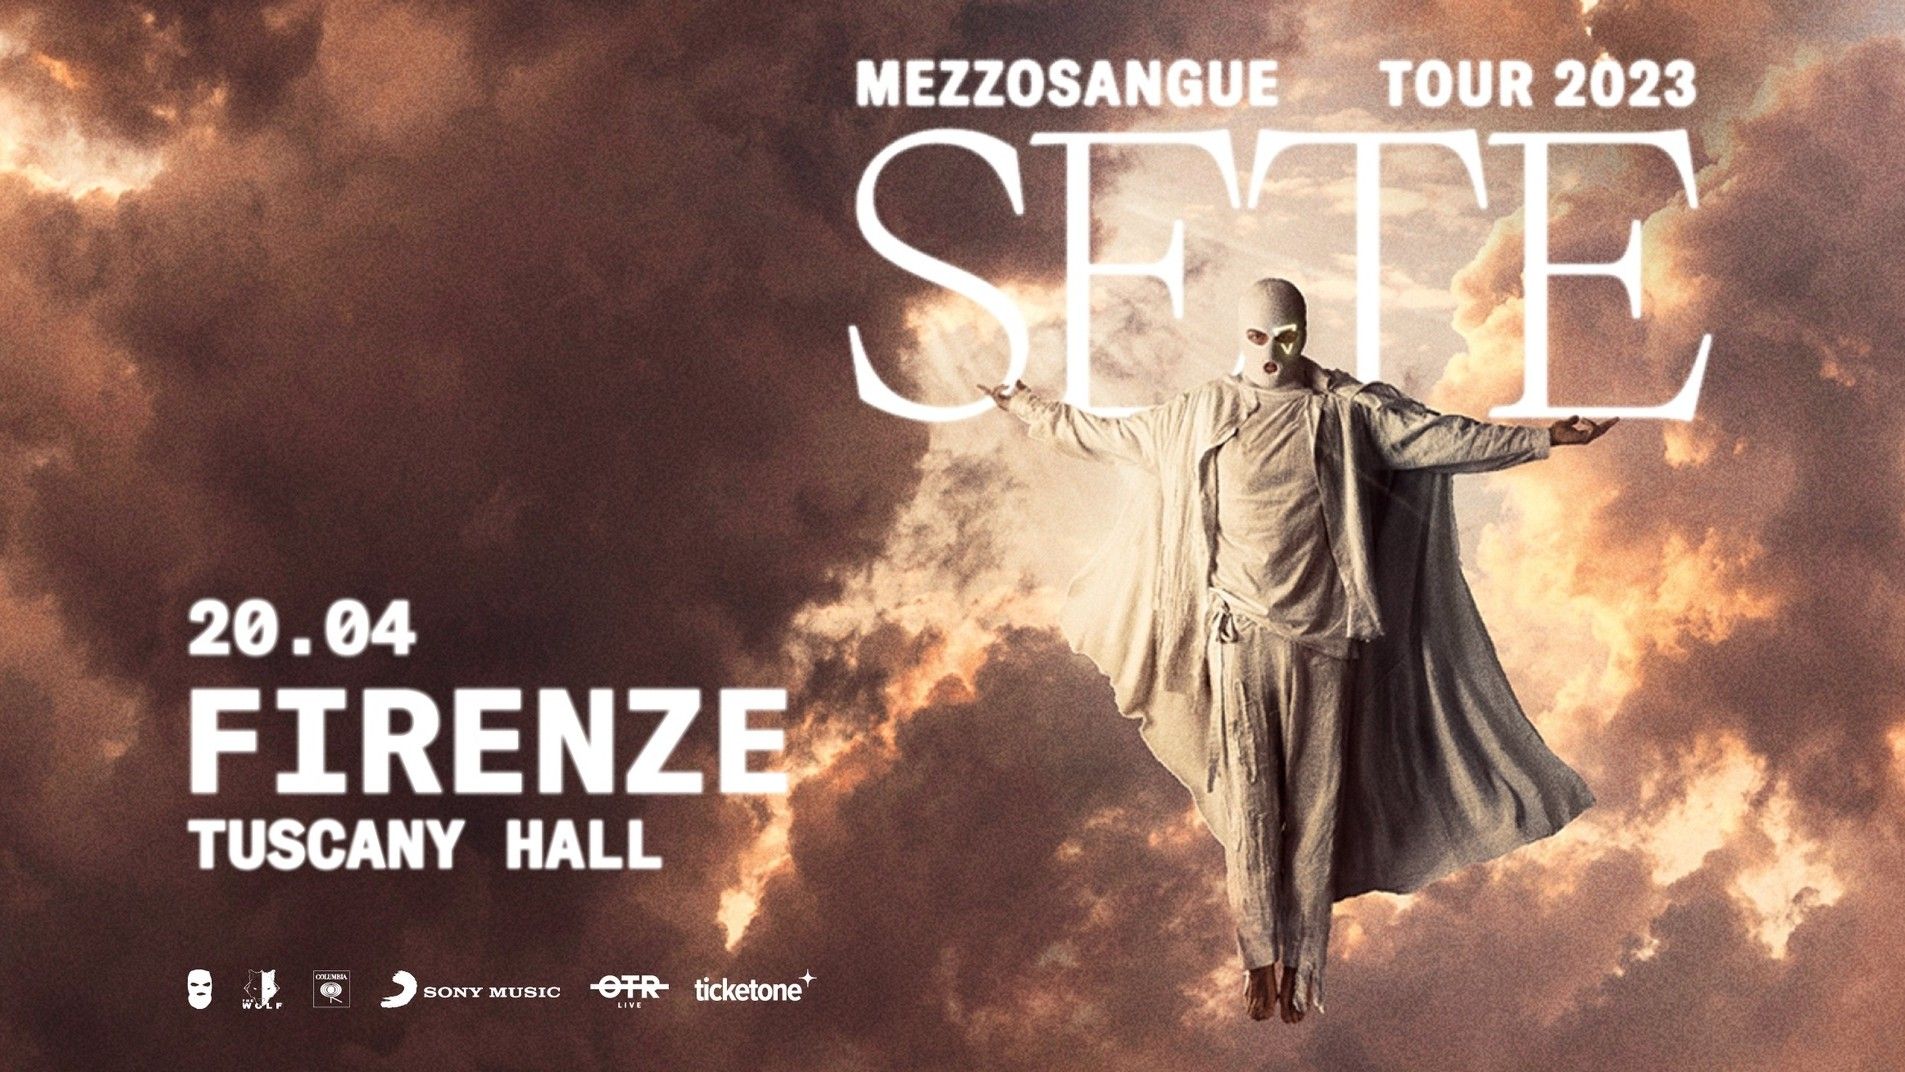 Mezzosangue - "Sete Tour 2023"